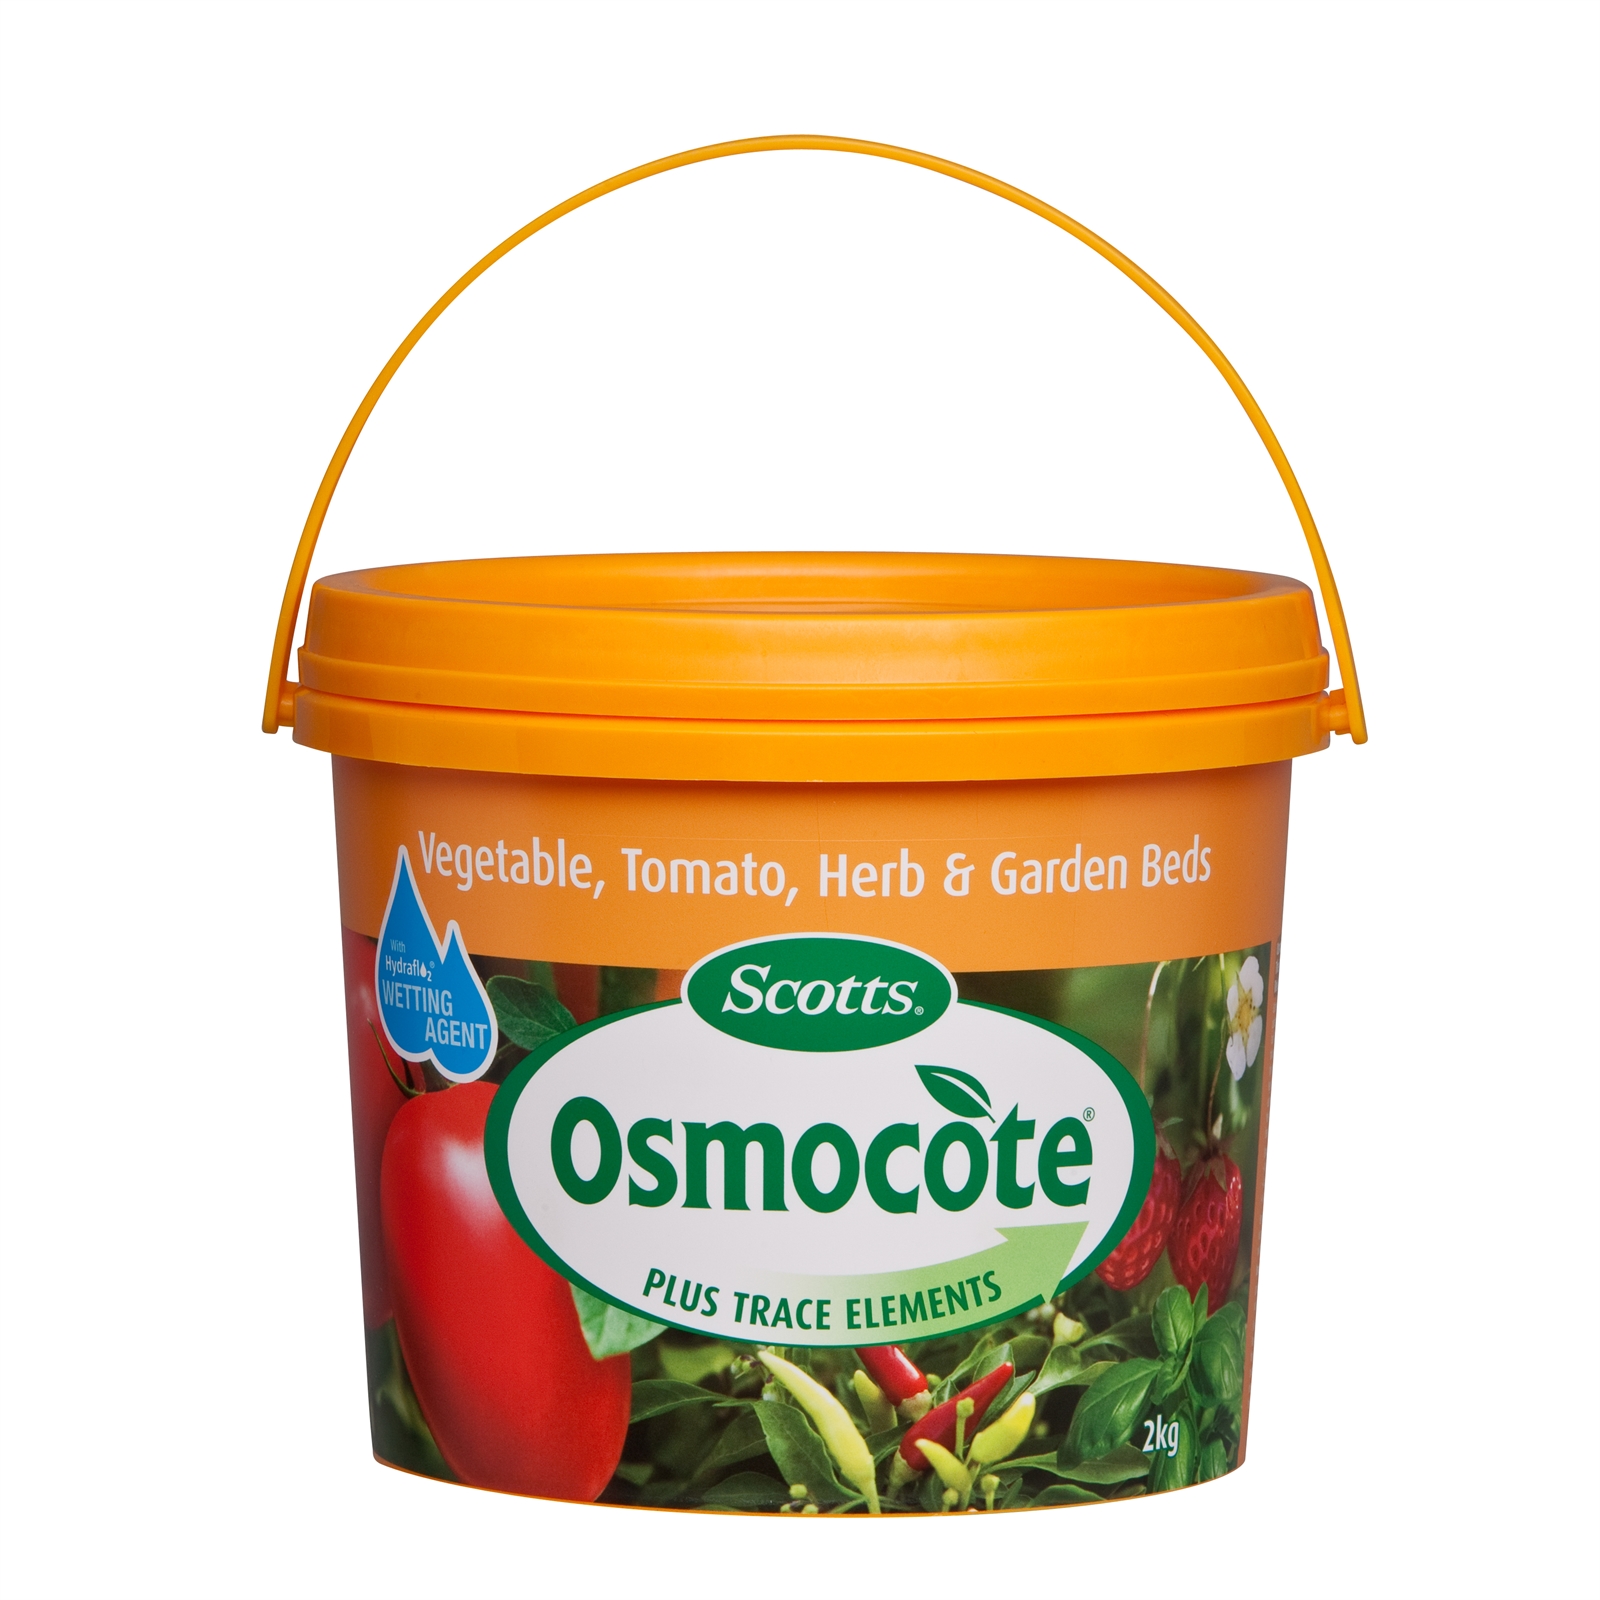 Osmocote 2kg Vegetable, Tomato, Herb and Garden Beds Controlled Release Fertiliser